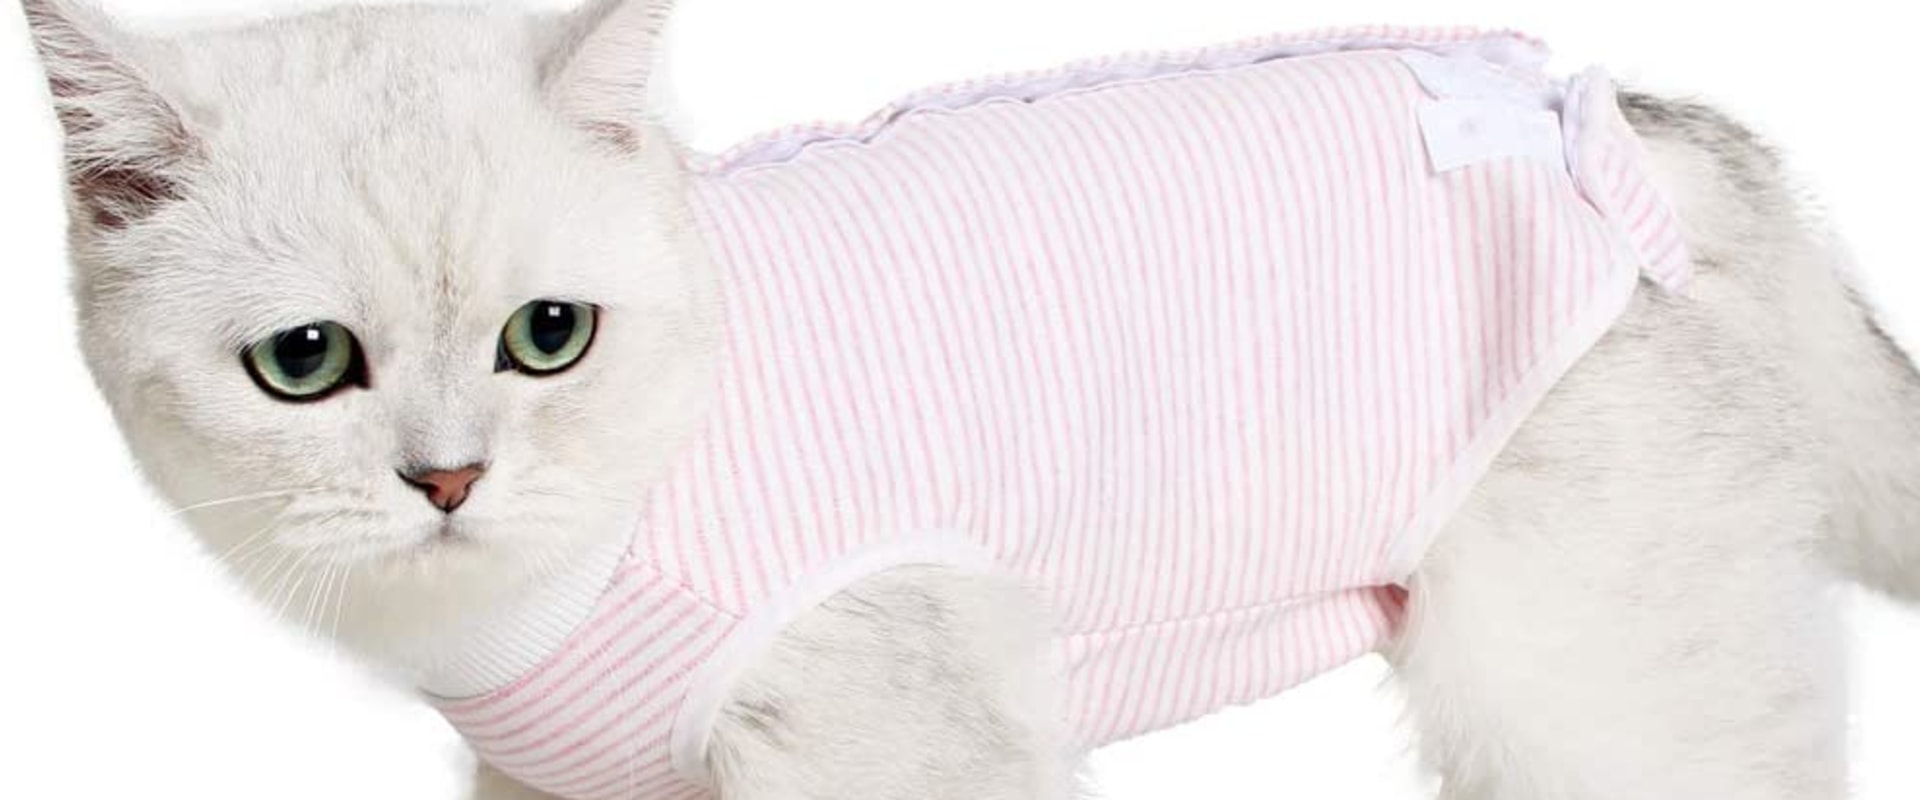 Is kleding ongemakkelijk voor katten?